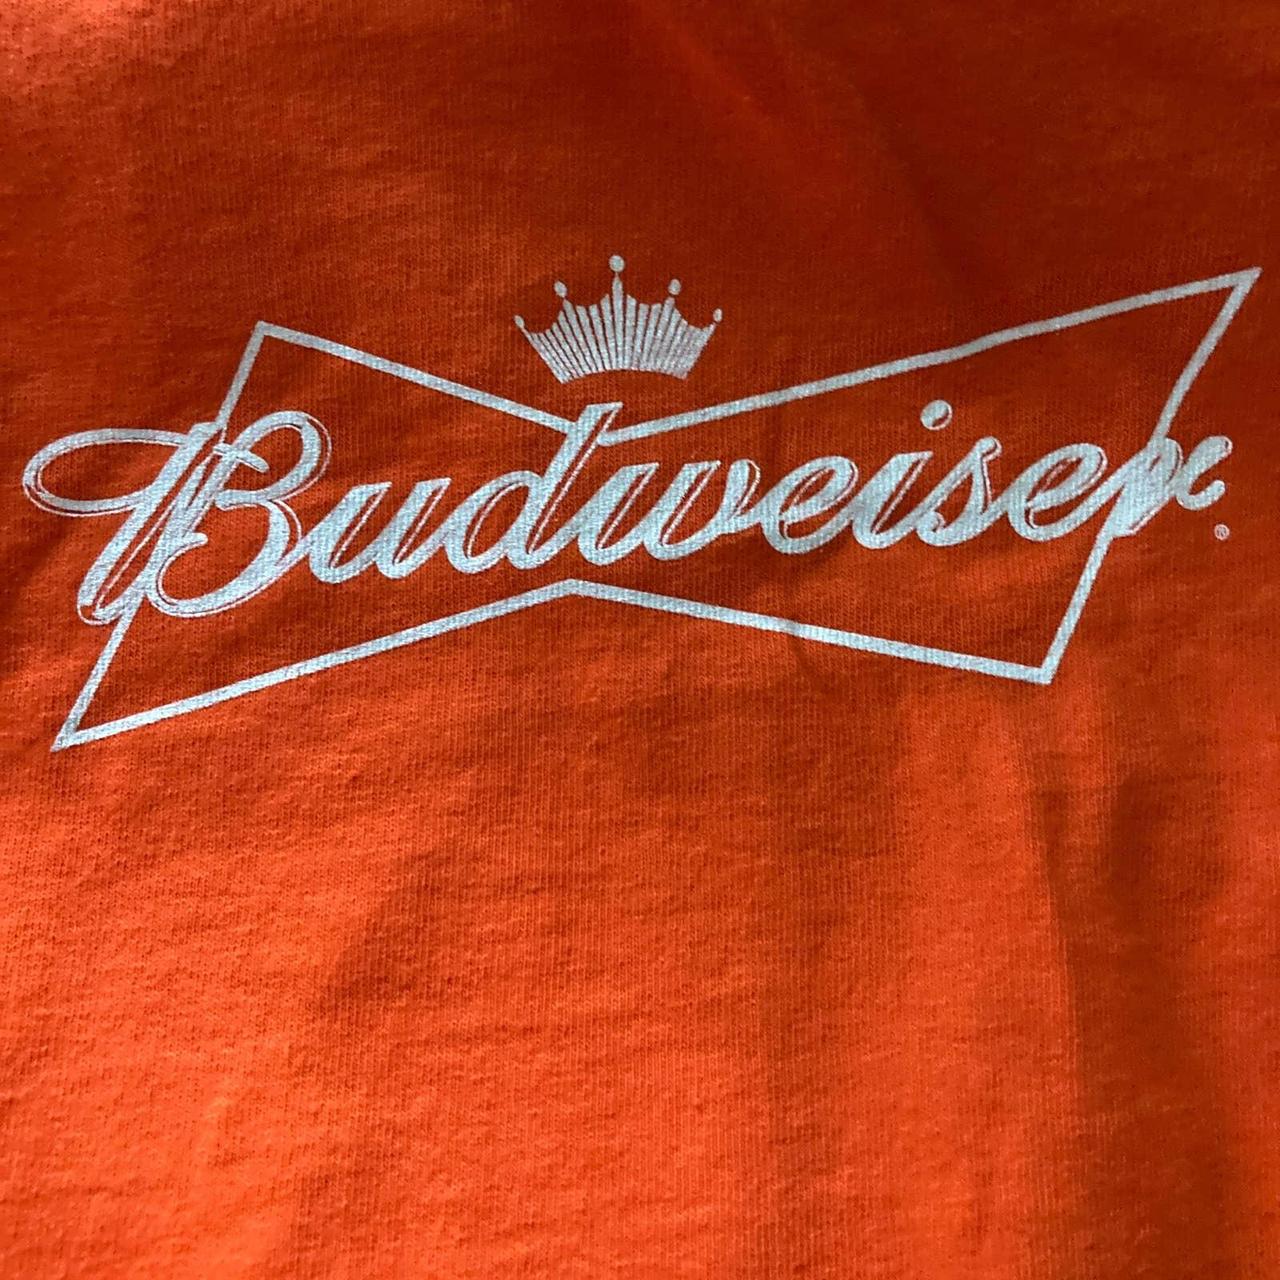 NY METS LOS METS Budweiser Men's Orange T-Shirt NEW - Depop